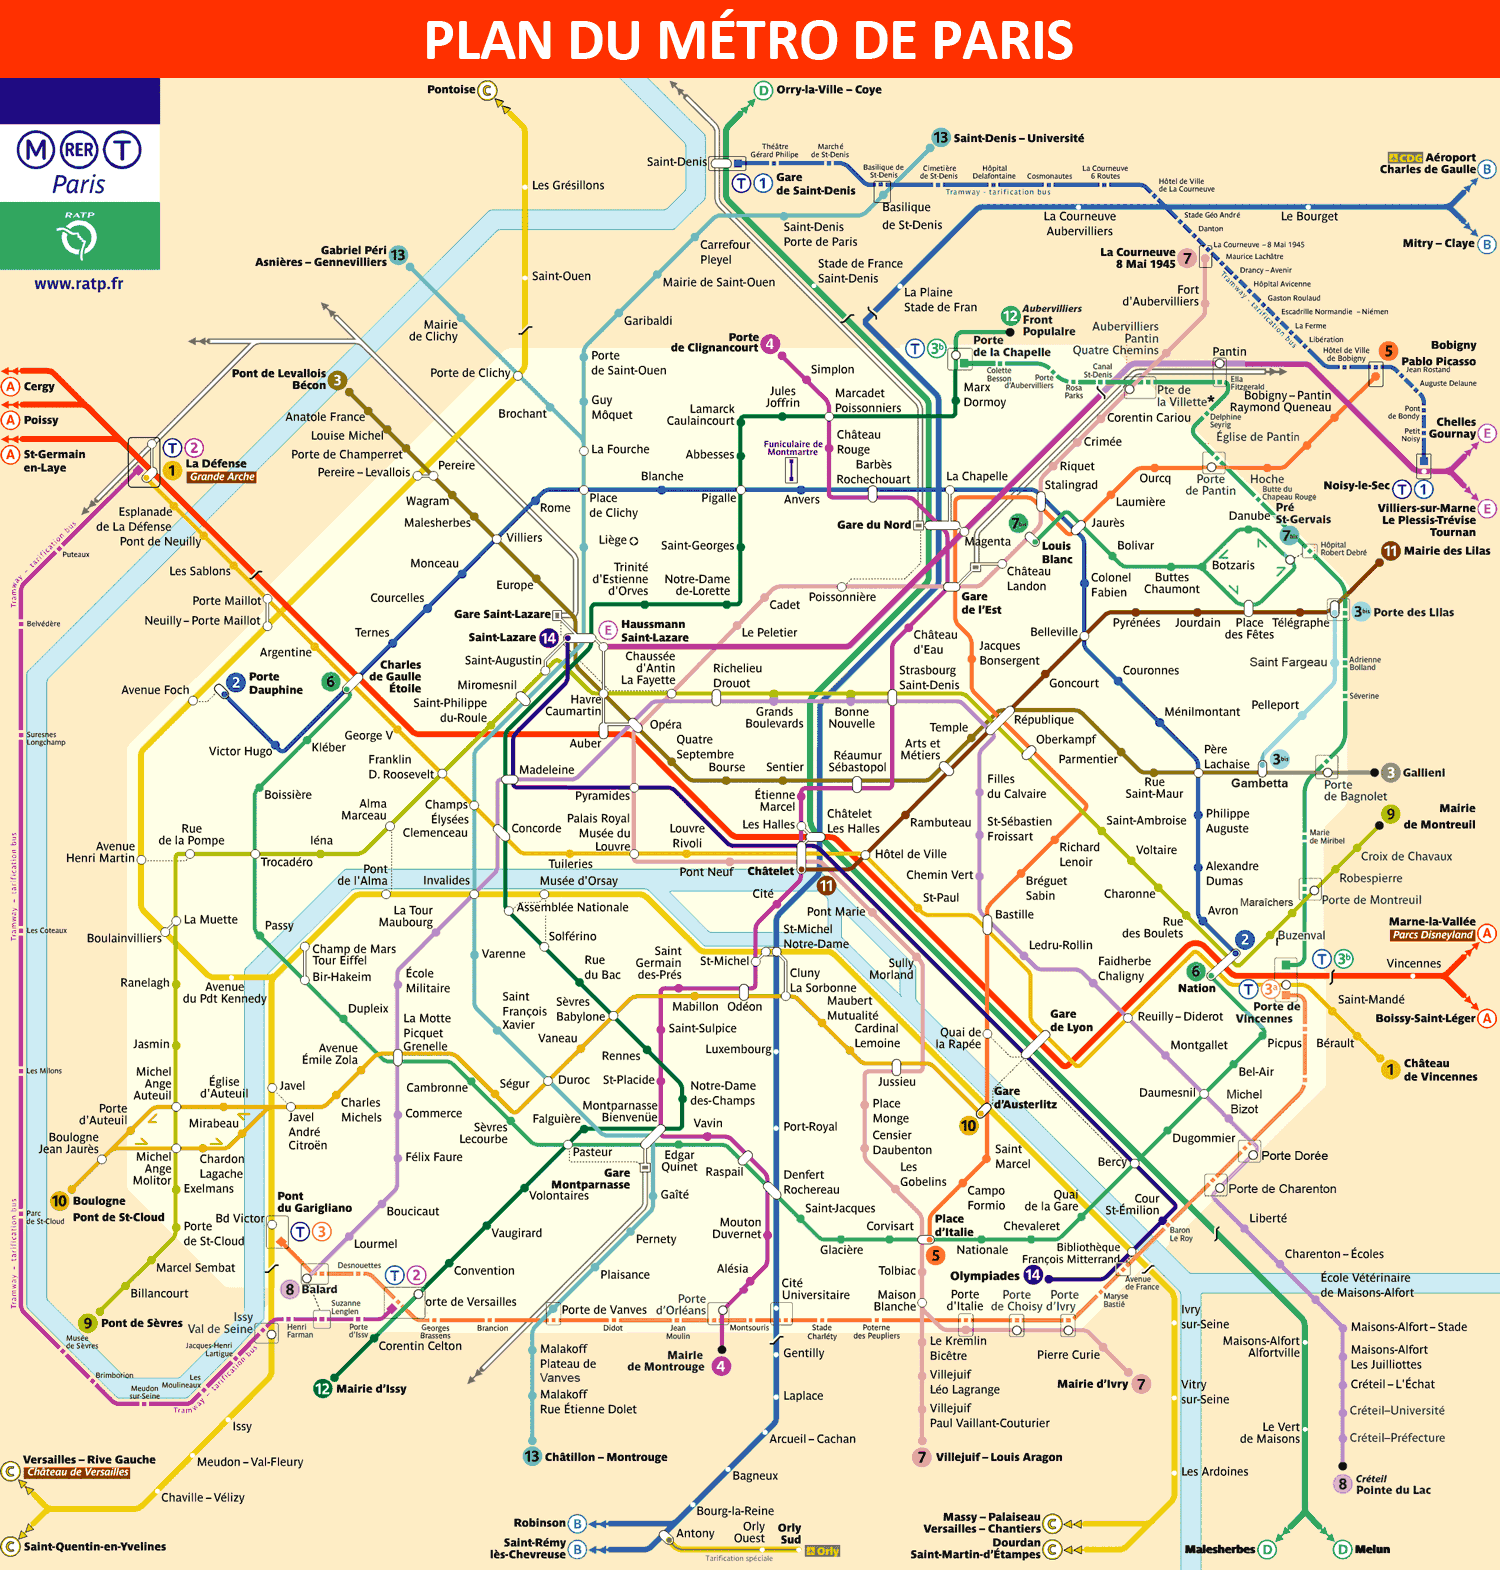 현재 파리 지하철 노선도 (출처: https://www.paris-metro-map.info/fr/plan-metro-paris/)